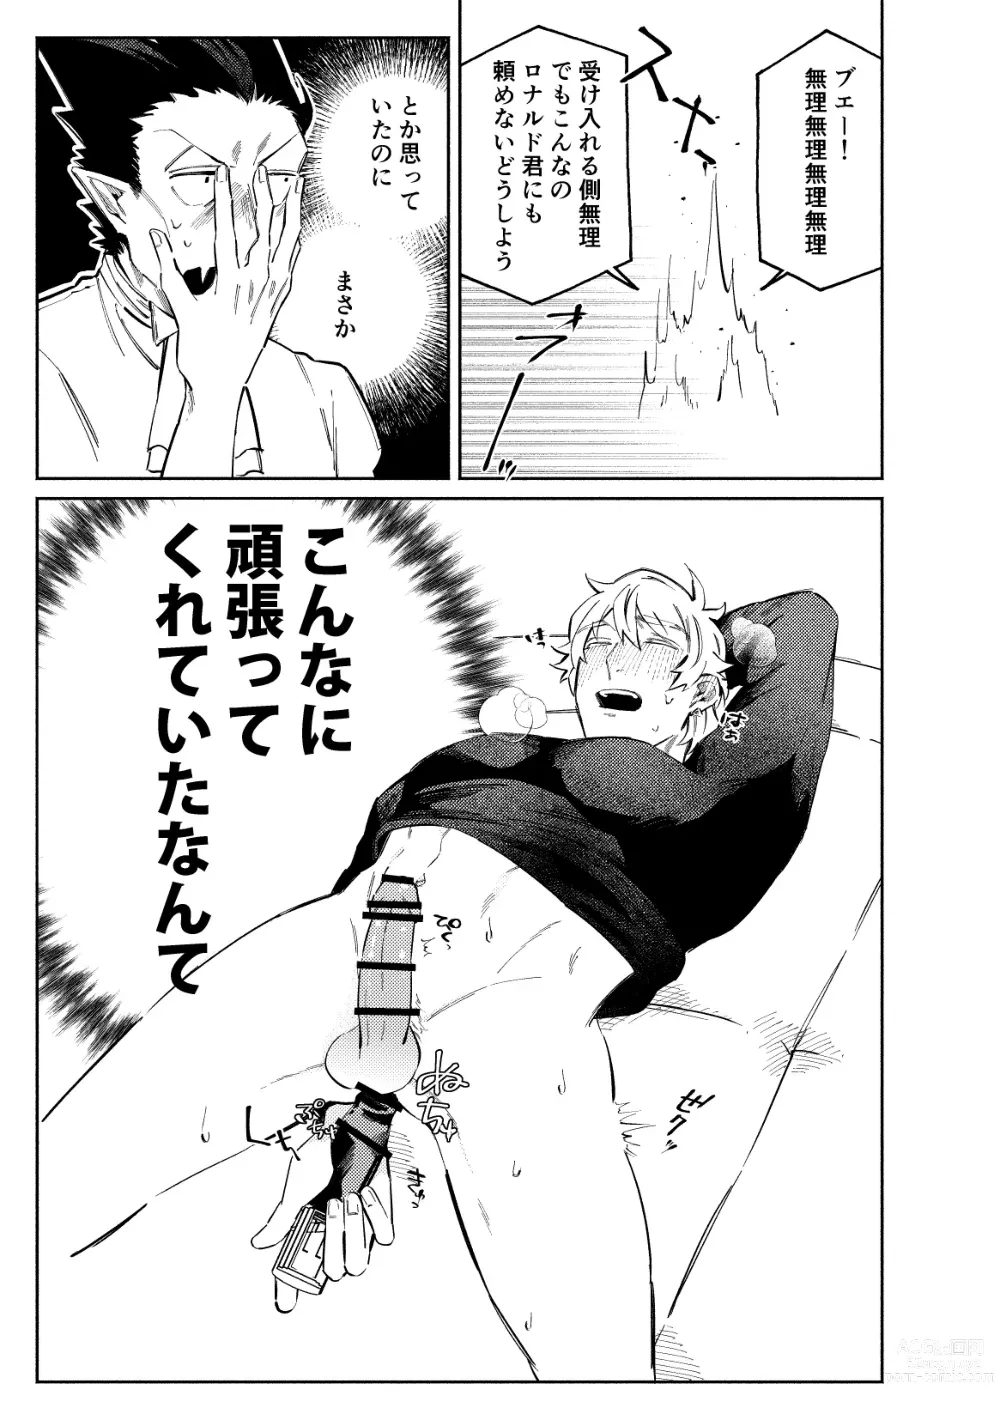 Page 11 of doujinshi 1stDRxxx